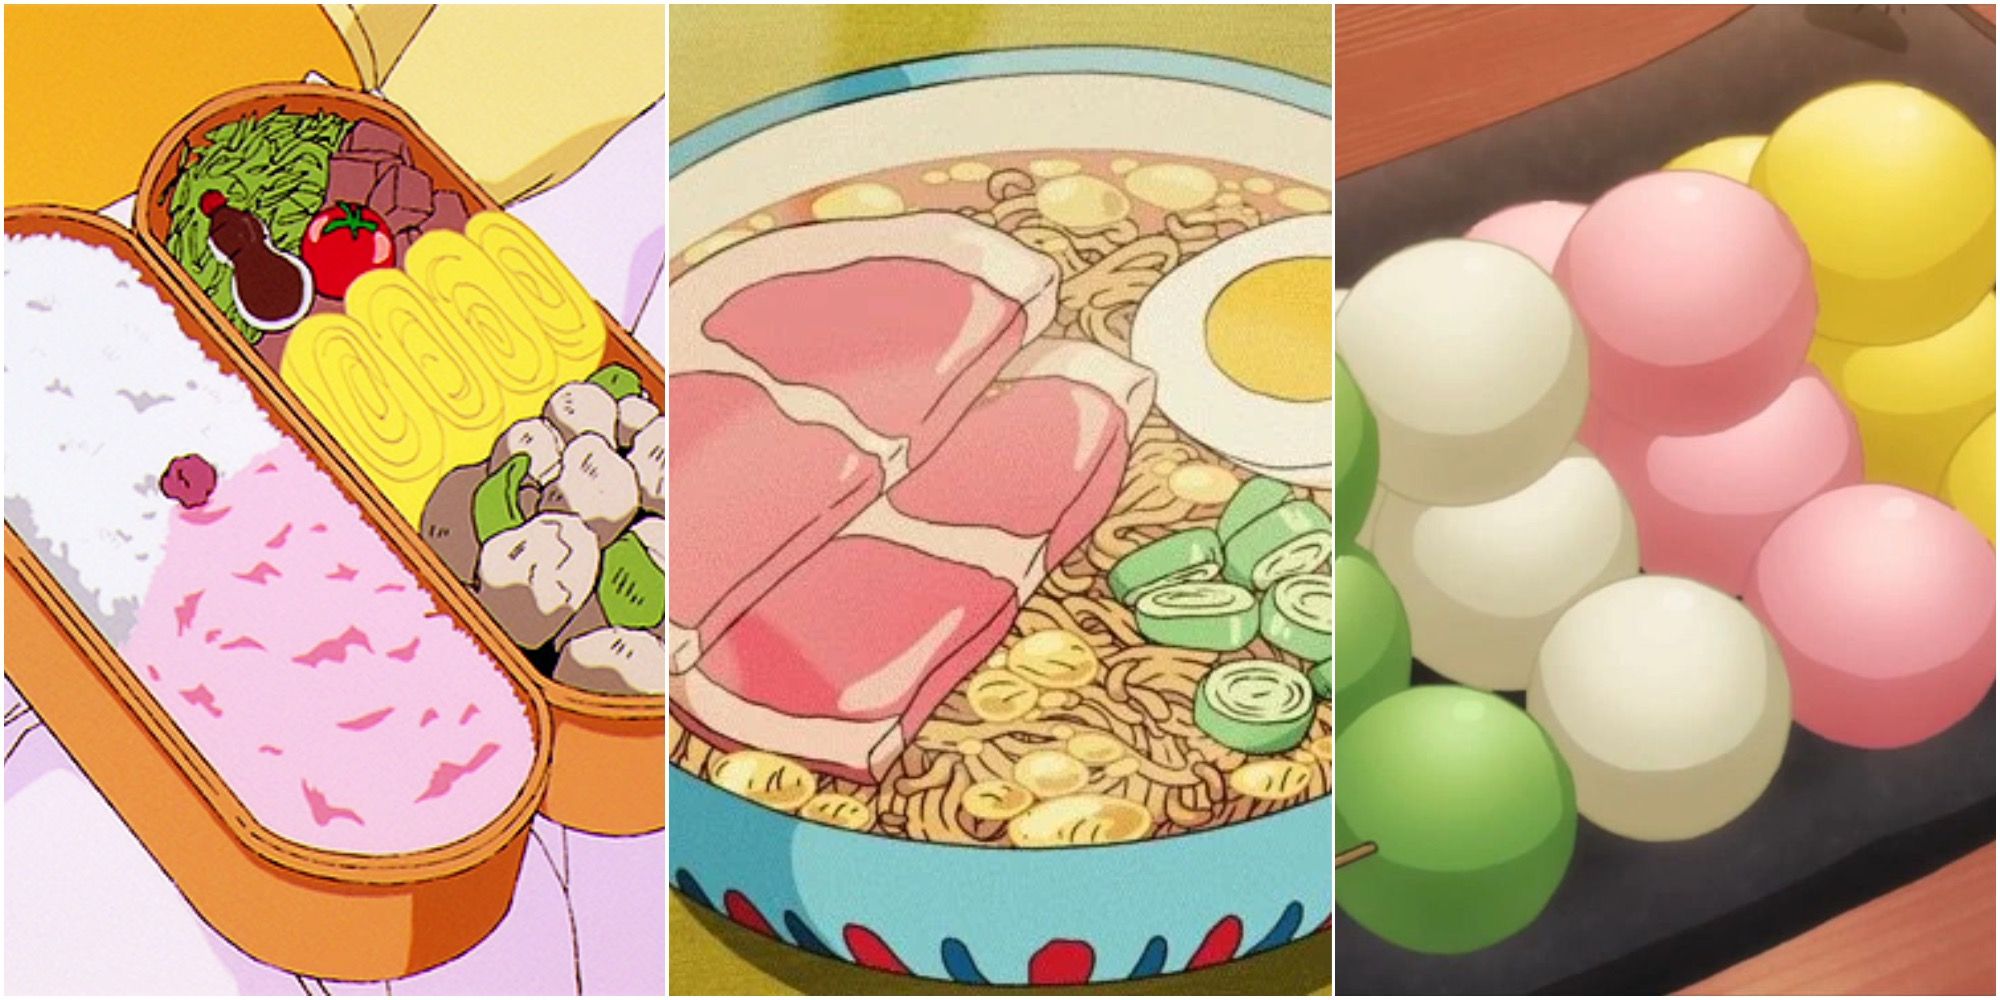 Anime and food collide! - Okamoto Kitchen